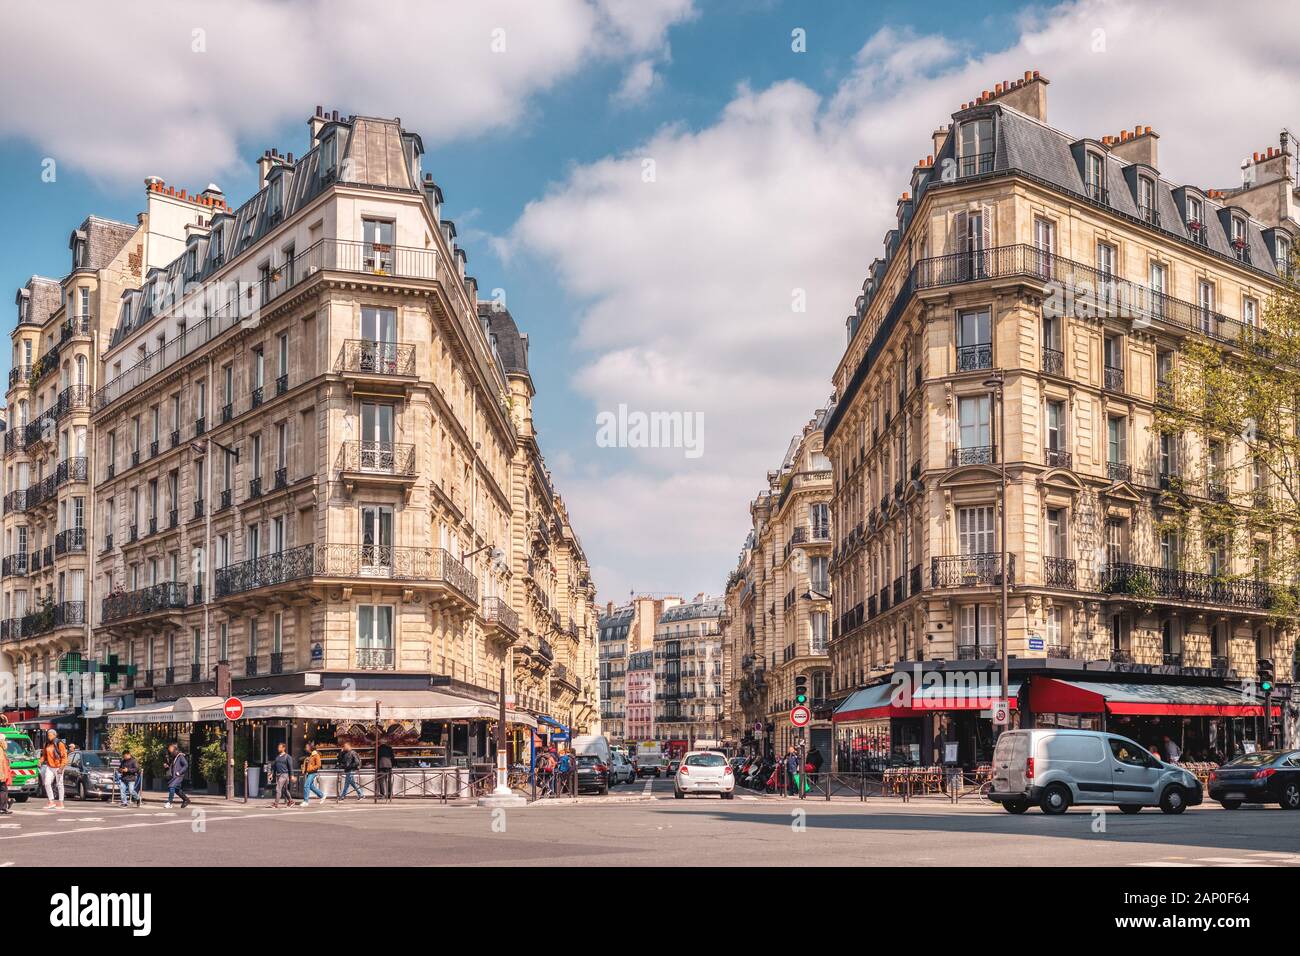 Rues de Paris, France avec leurs célèbres bâtiments et trafic pendant la journée. Banque D'Images